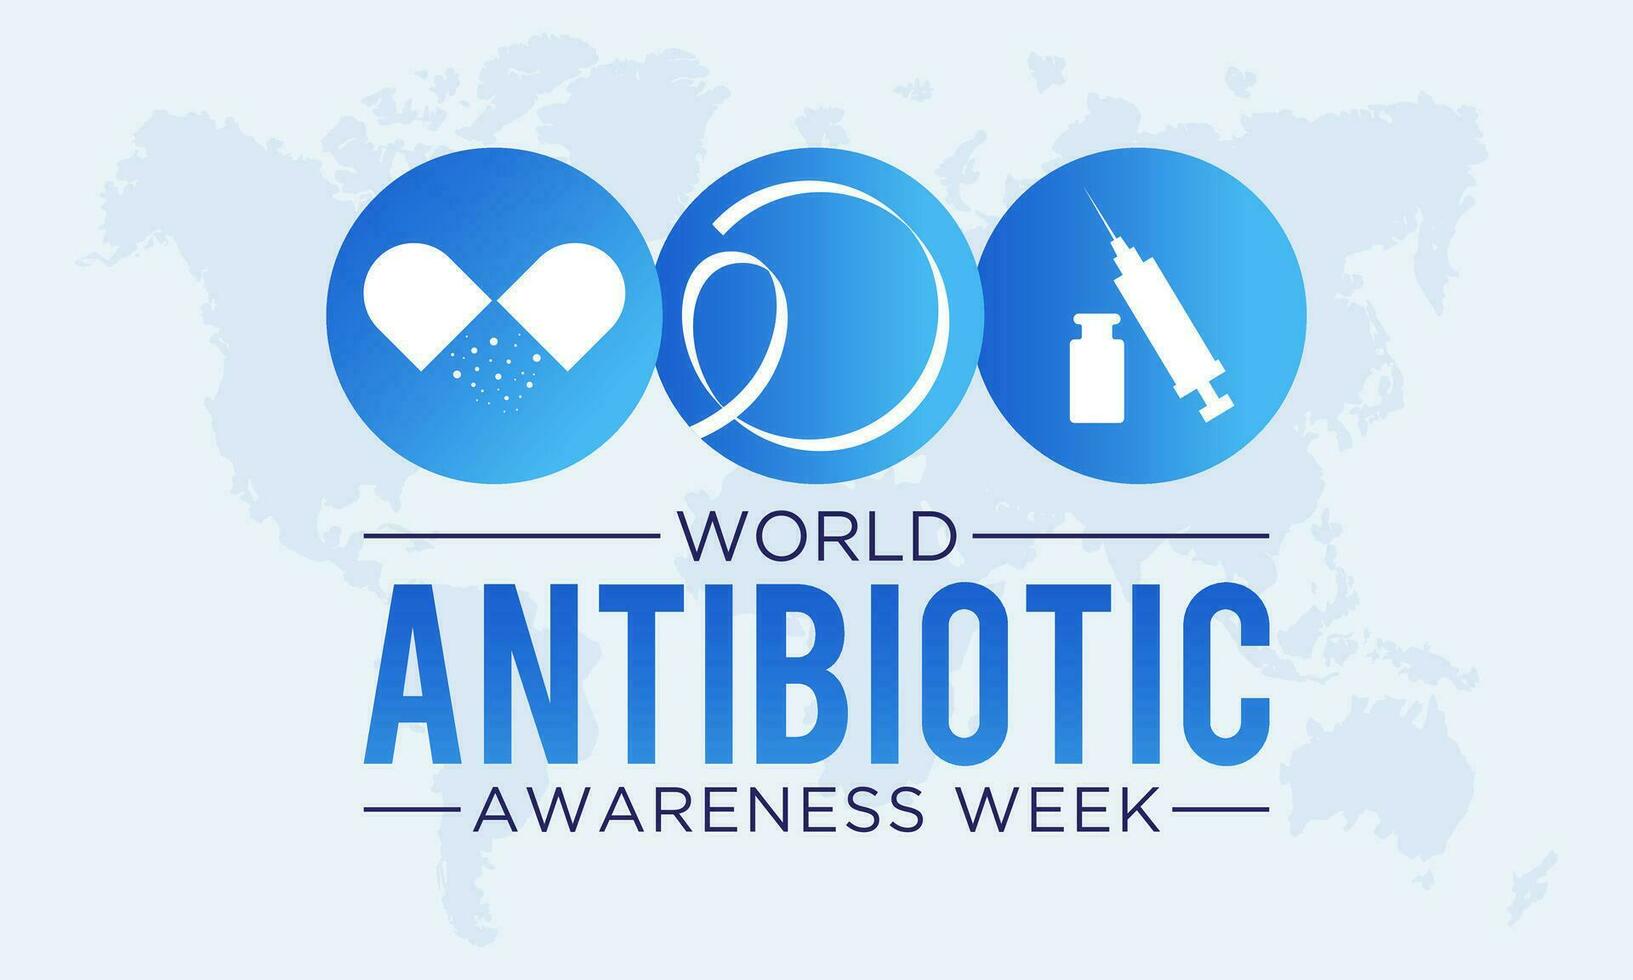 Vektor Illustration auf das Thema von Welt Antibiotikum Bewusstsein Woche beobachtete jeder Jahr im während November 18 zu 24. Welt antimikrobiell Bewusstsein Woche Vorlage zum Banner, Poster mit Hintergrund.